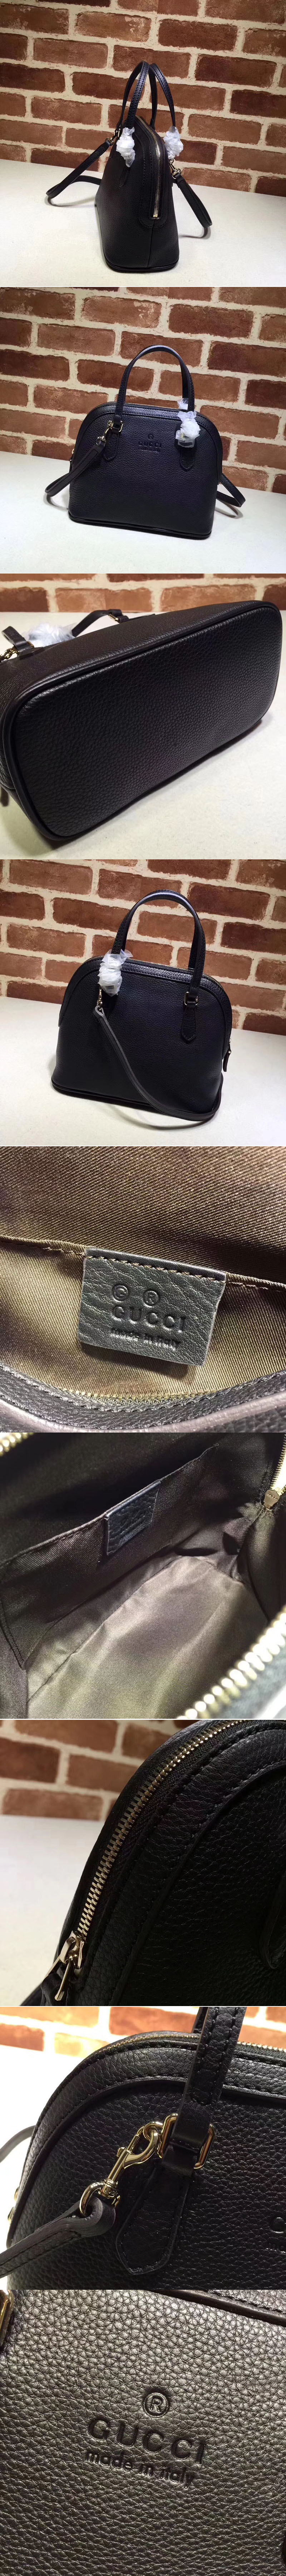 Replica Gucci 341504 Calfskin Leather Small Tote Bags Black